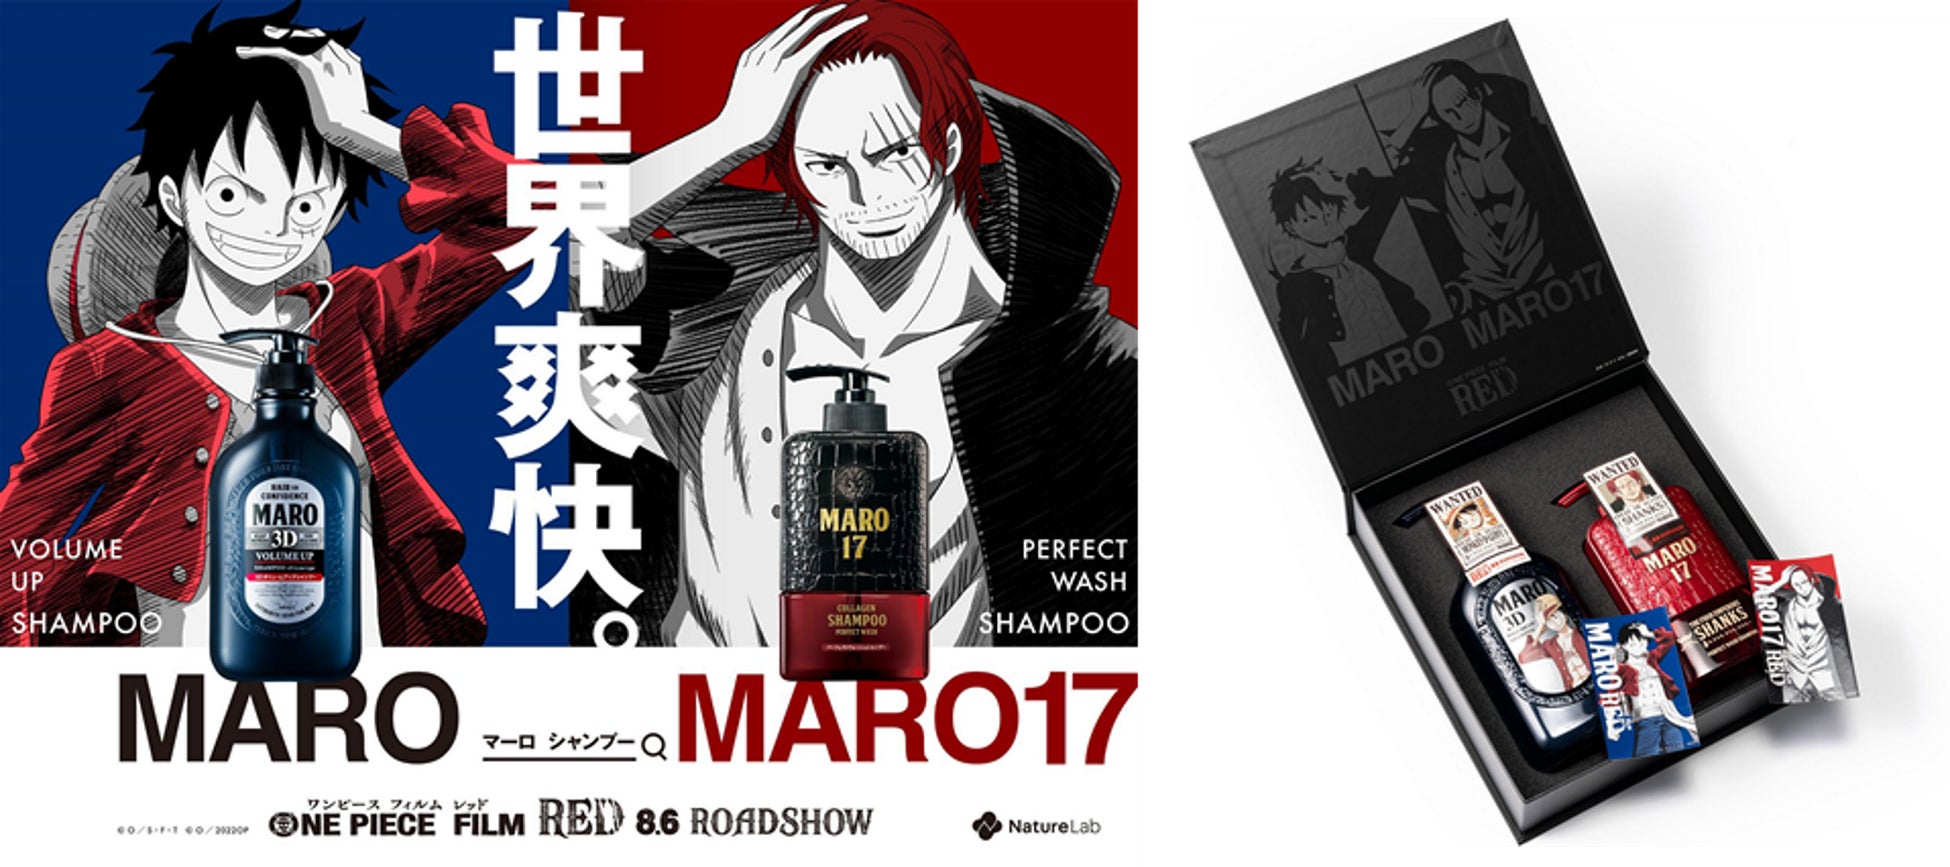 『ONE PIECE FILM RED』×『MARO(マーロ)』 描き下ろしイラスト入りコラボBOXが2022年8月1日(月)よりネイチャーラボ公式ストア(EC)にて数量限定発売！